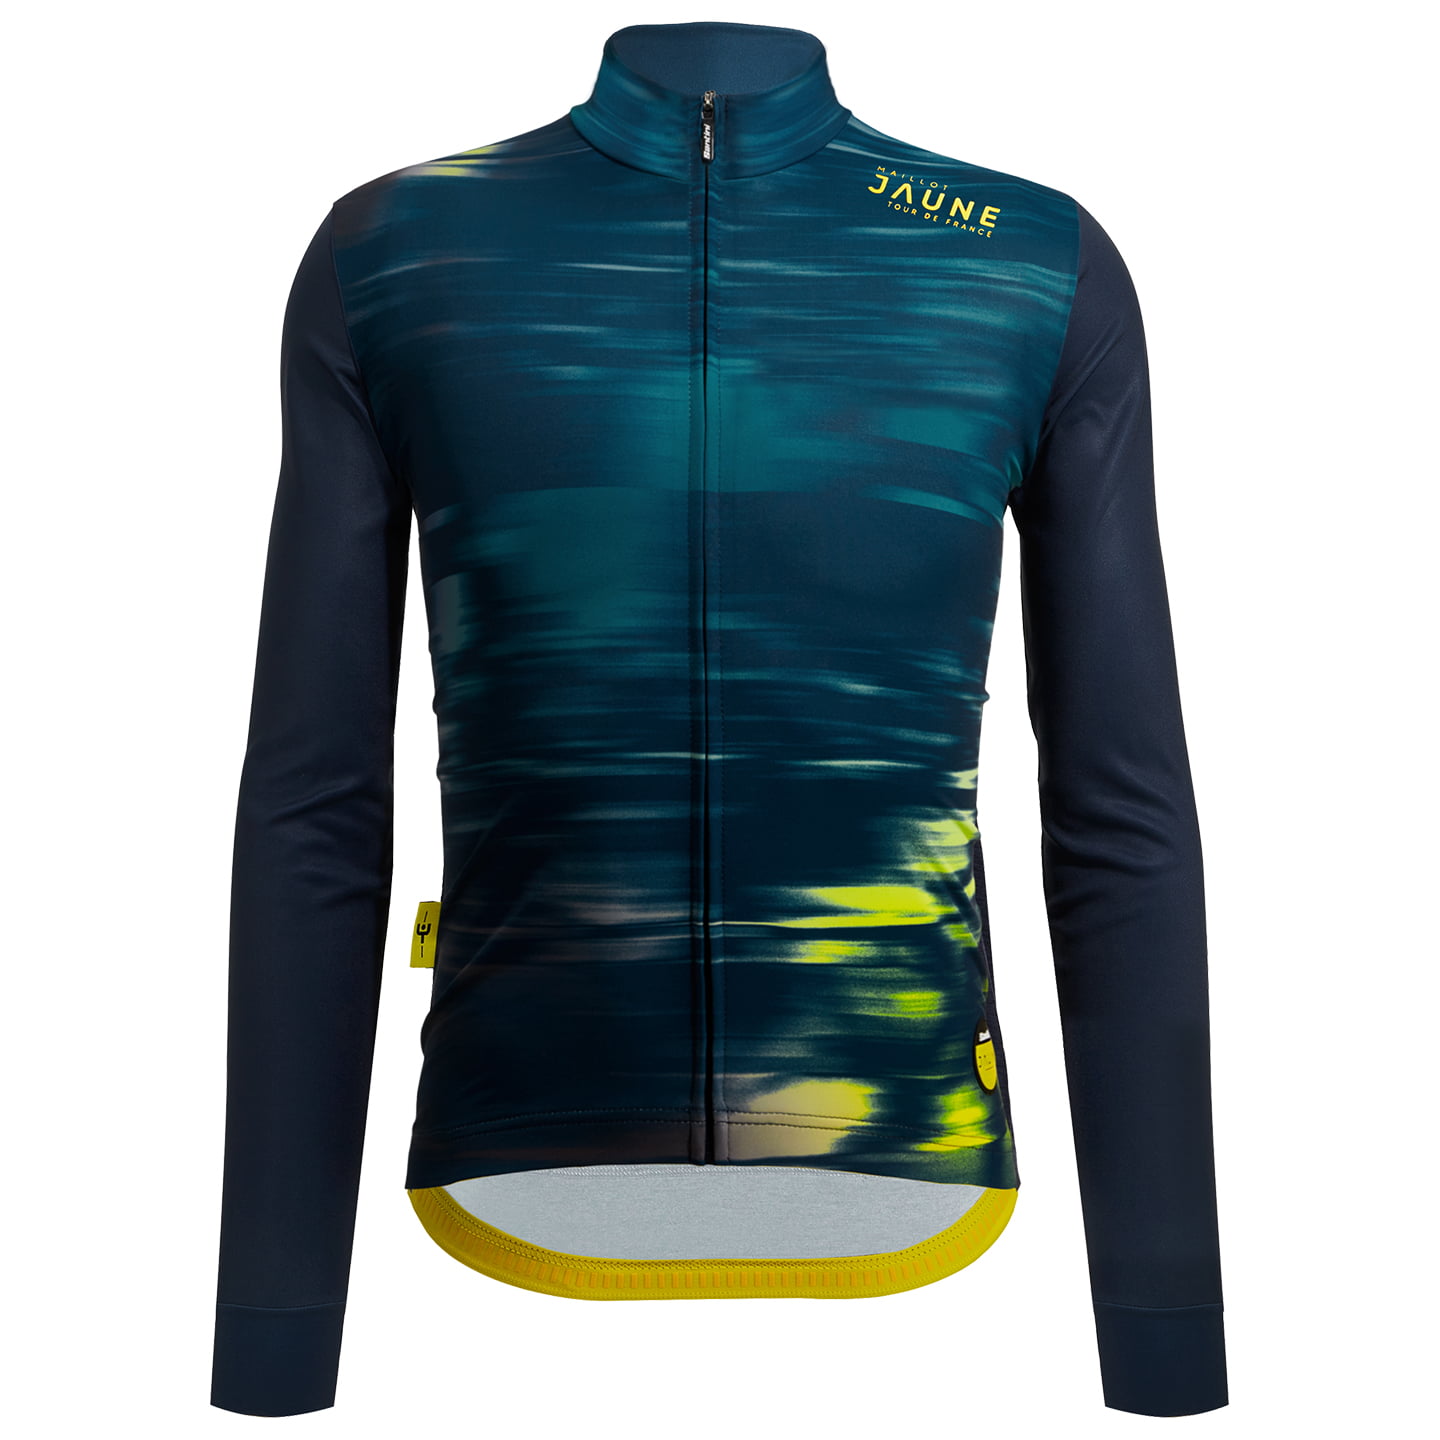 TOUR DE FRANCE Le Maillot Jaune 2022 Long Sleeve Jersey, for men, size 2XL, Cycle shirt, Bike gear